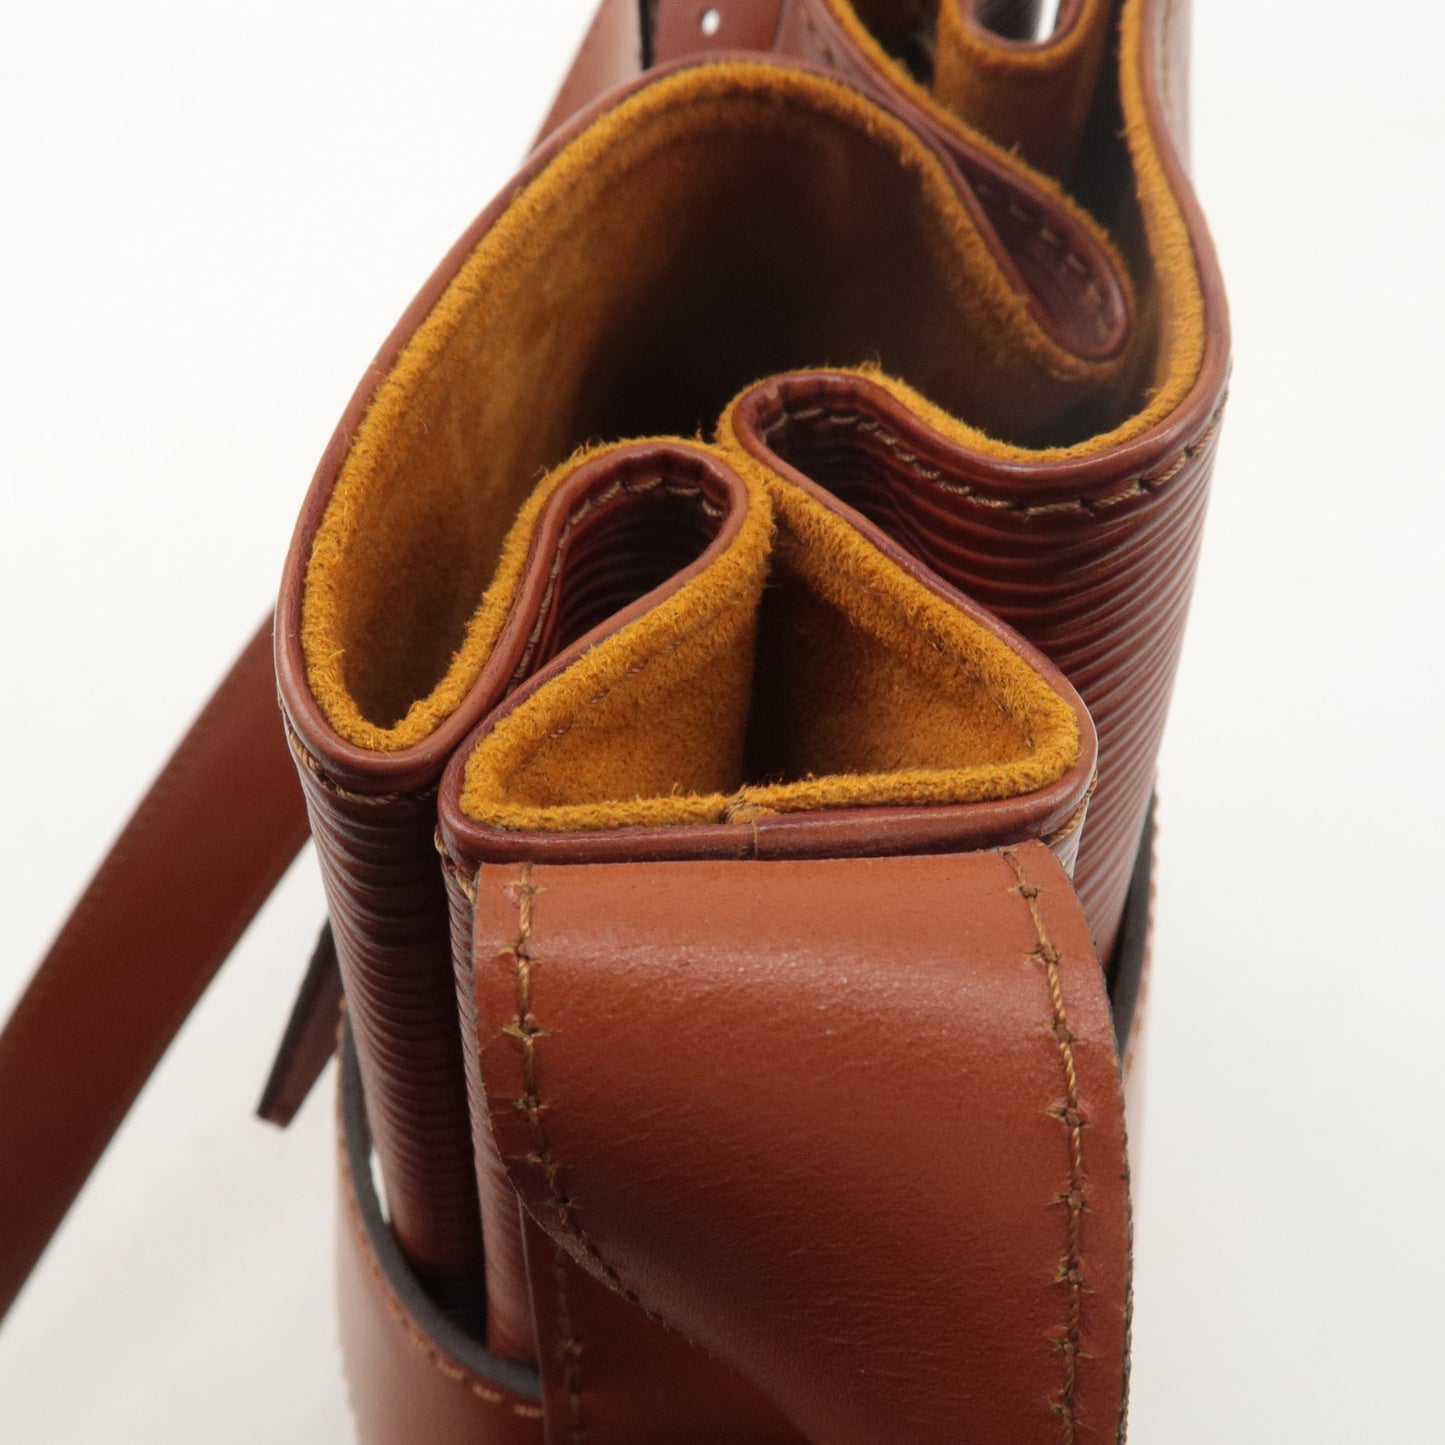 Louis Vuitton Epi Sac D'epaule PM Bucket Bag Kenya Brown M80203